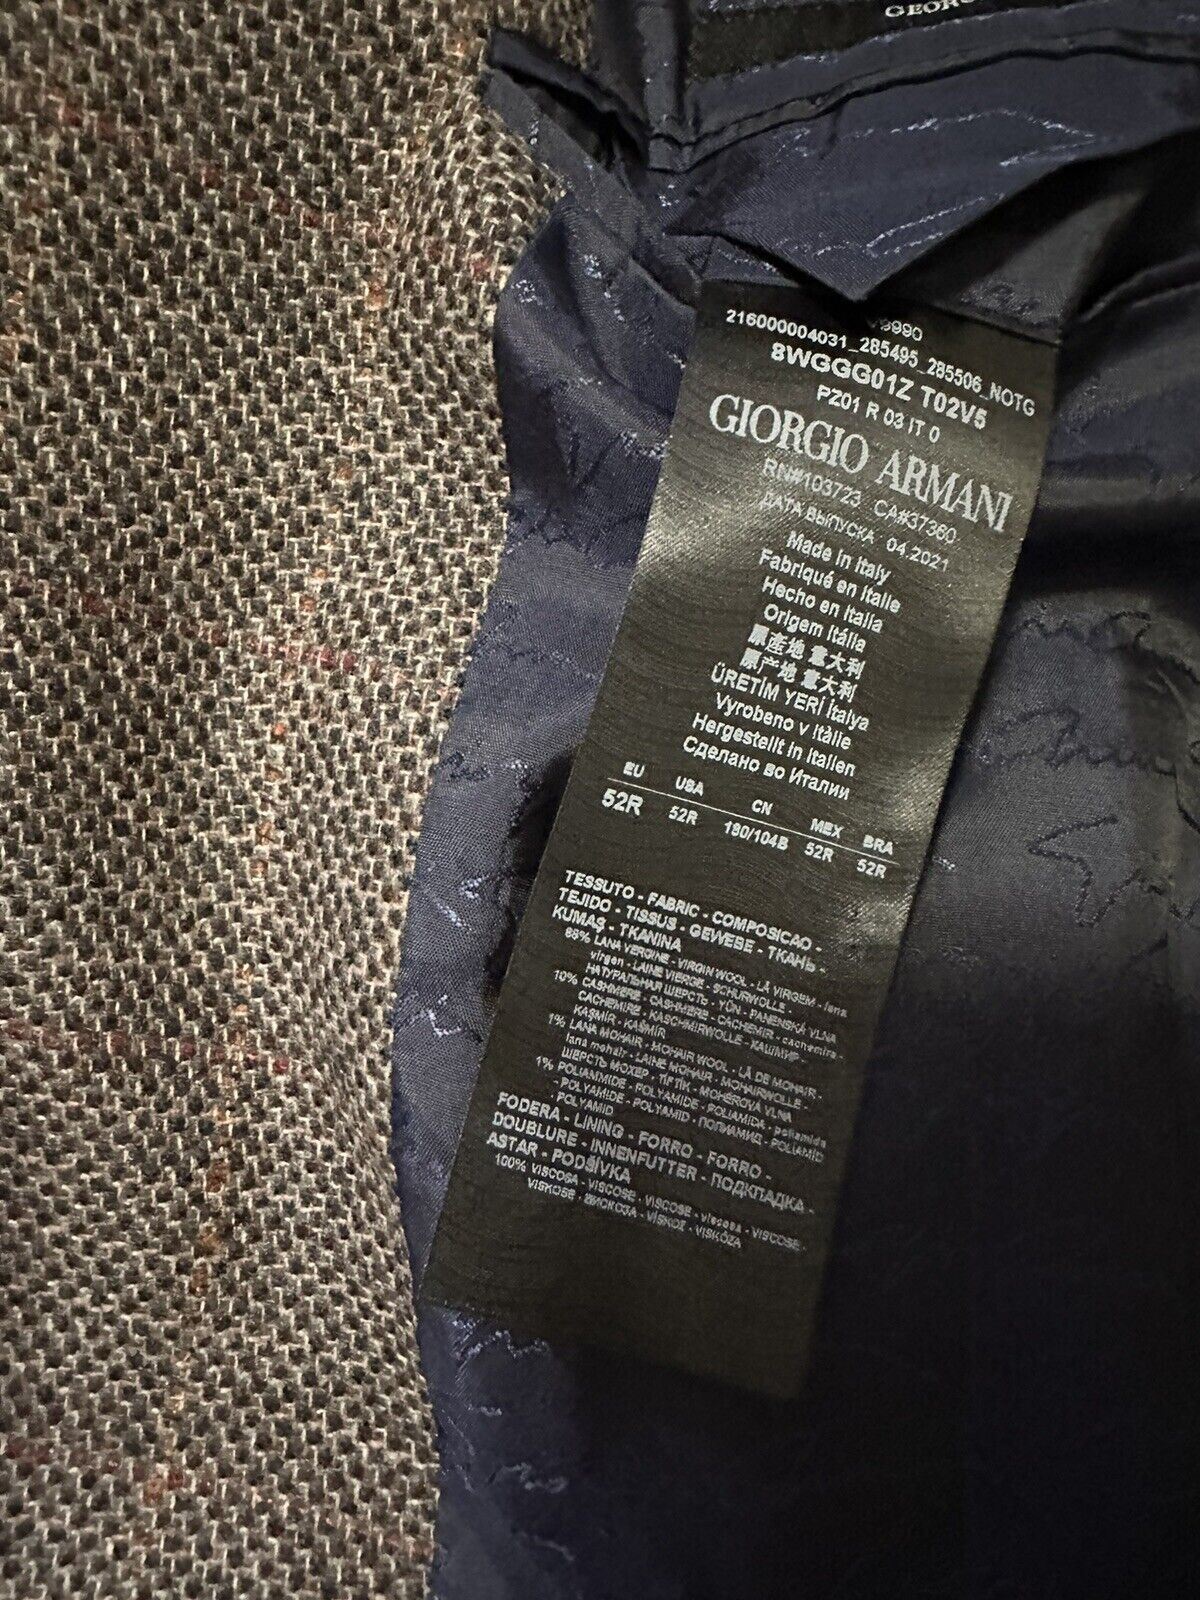 СЗТ 2695 долларов США Giorgio Armani Мужская спортивная куртка в клетку Блейзер Коричневый/Мю. 42 США/52 Е